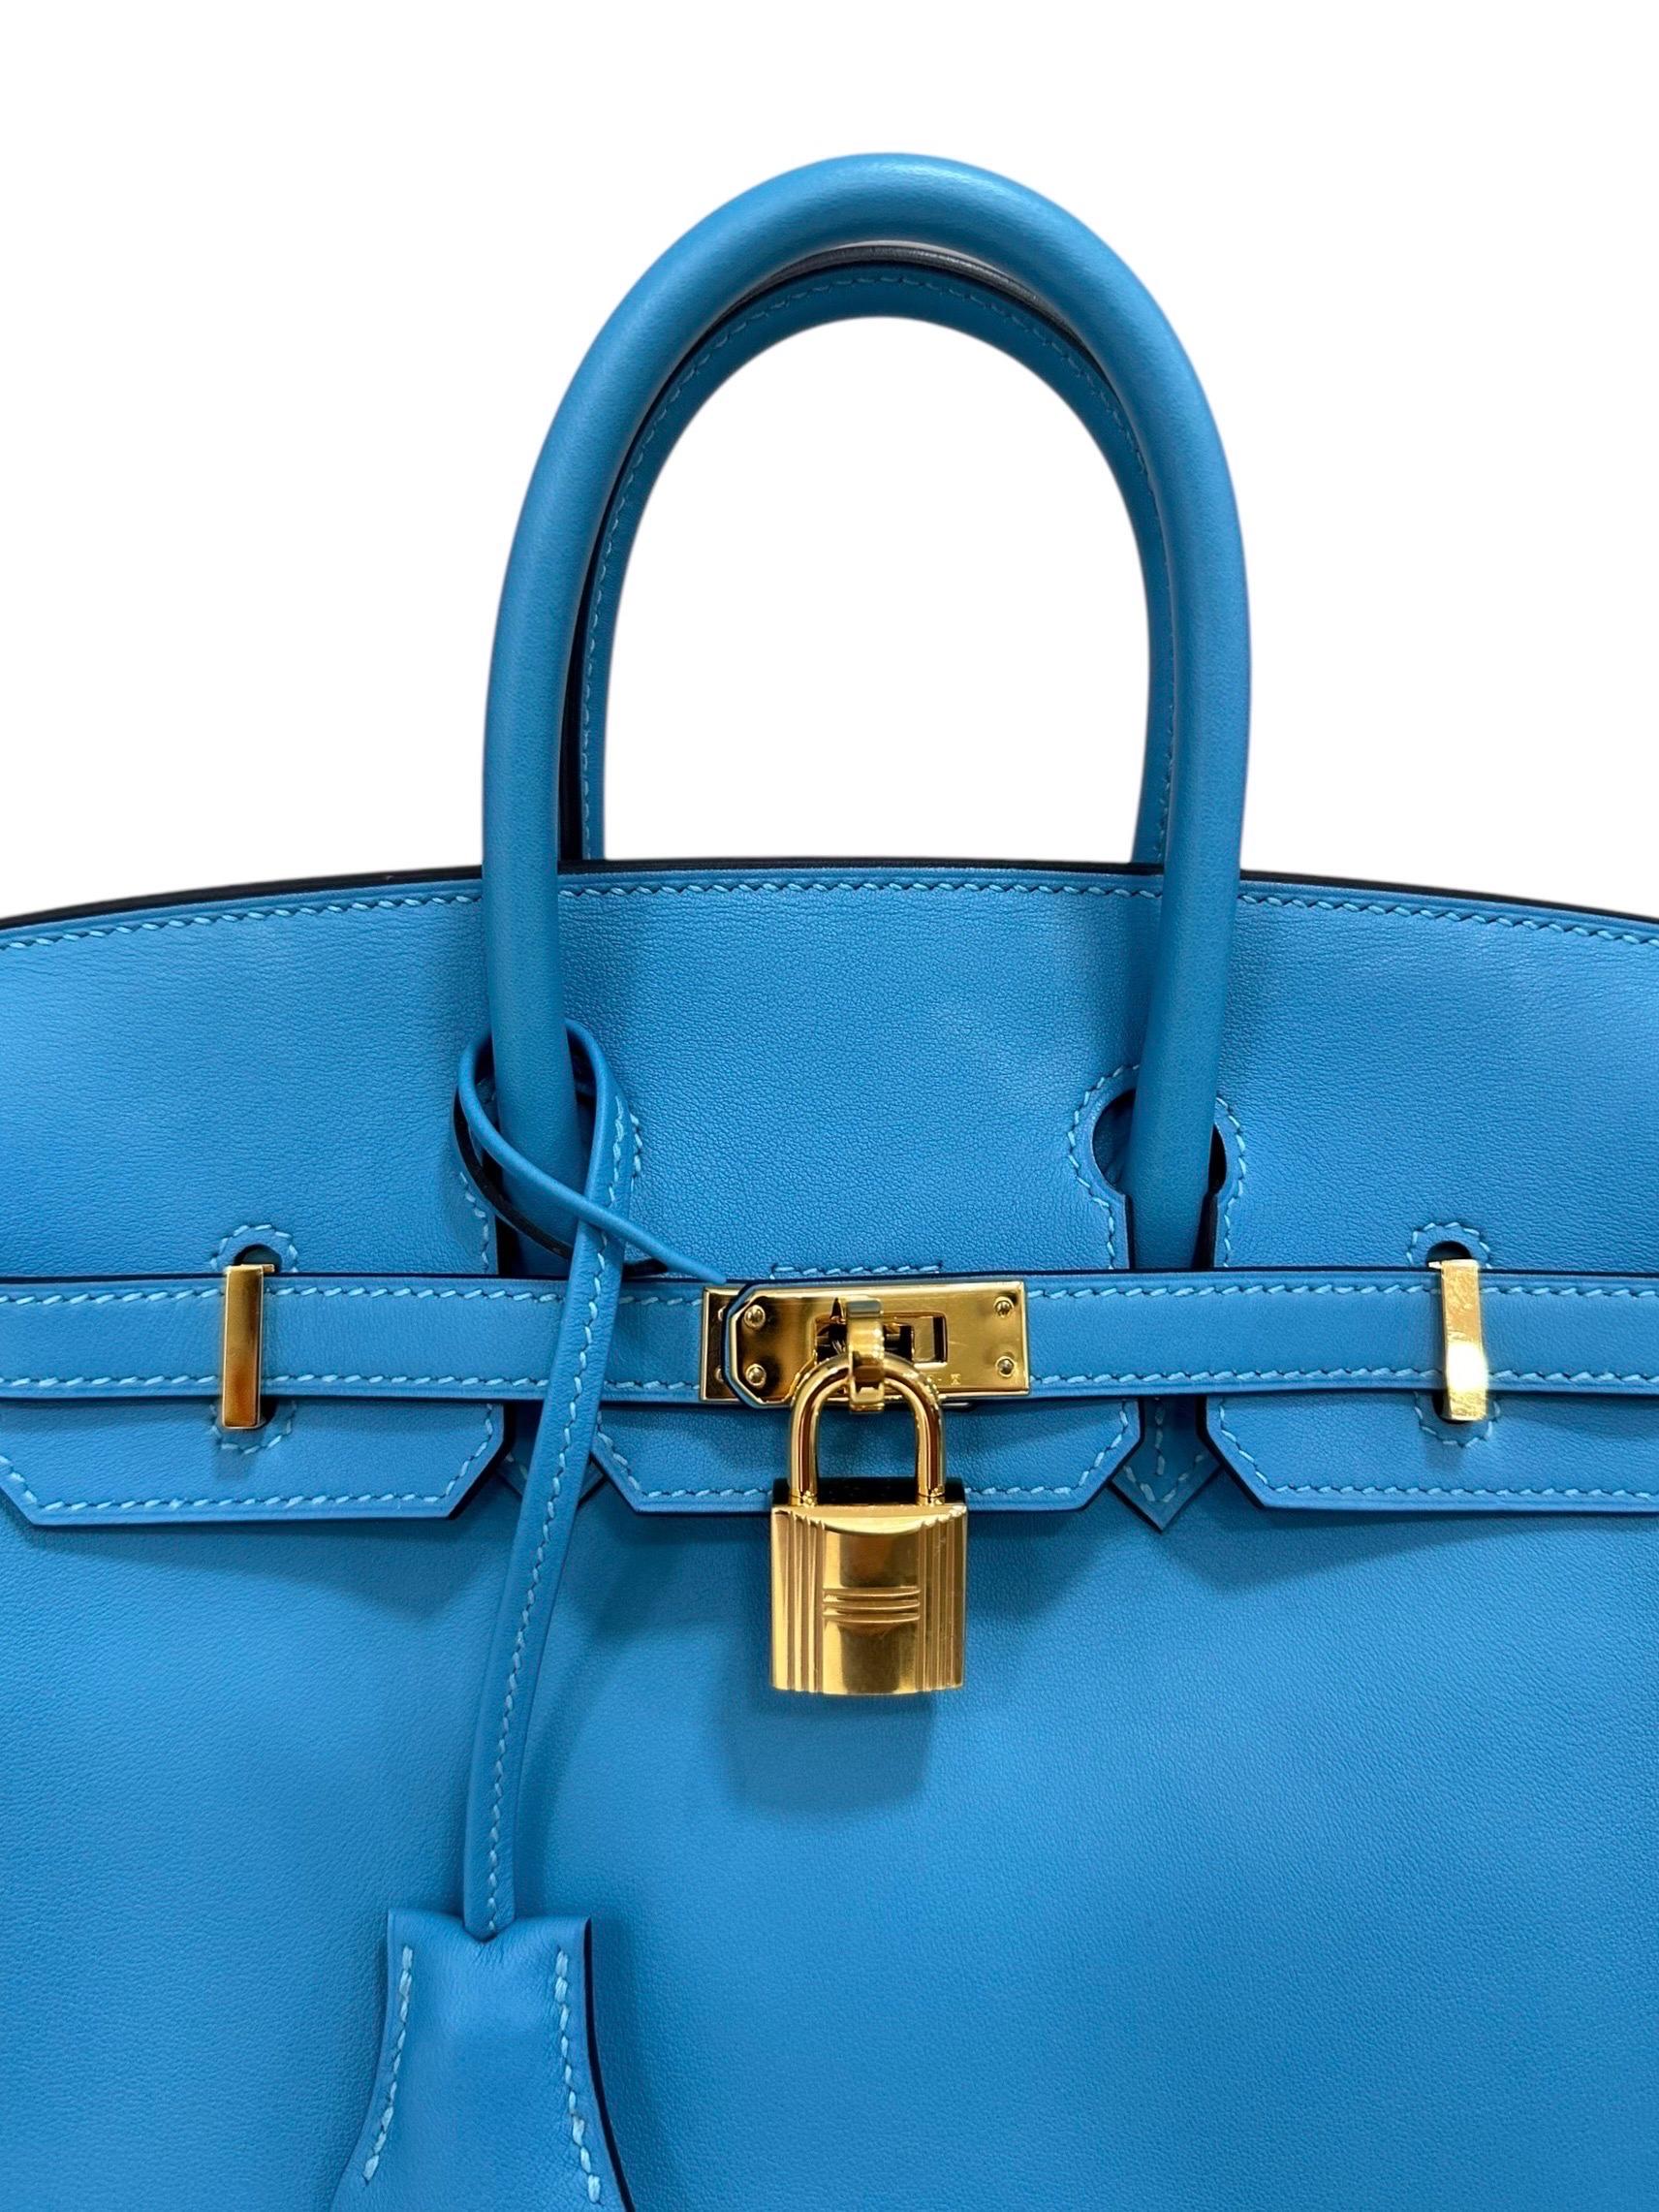 Hermès, Modell Birkin, Größe 25, hergestellt in Pelle swift, liscia e morbida al tatto, Farbe Blue Izmir con hardware dorati. Ausgestattet mit einer Klappe, die an der Innenseite mit einer Schlaufe versehen ist, sowie mit einer Schließe, einer